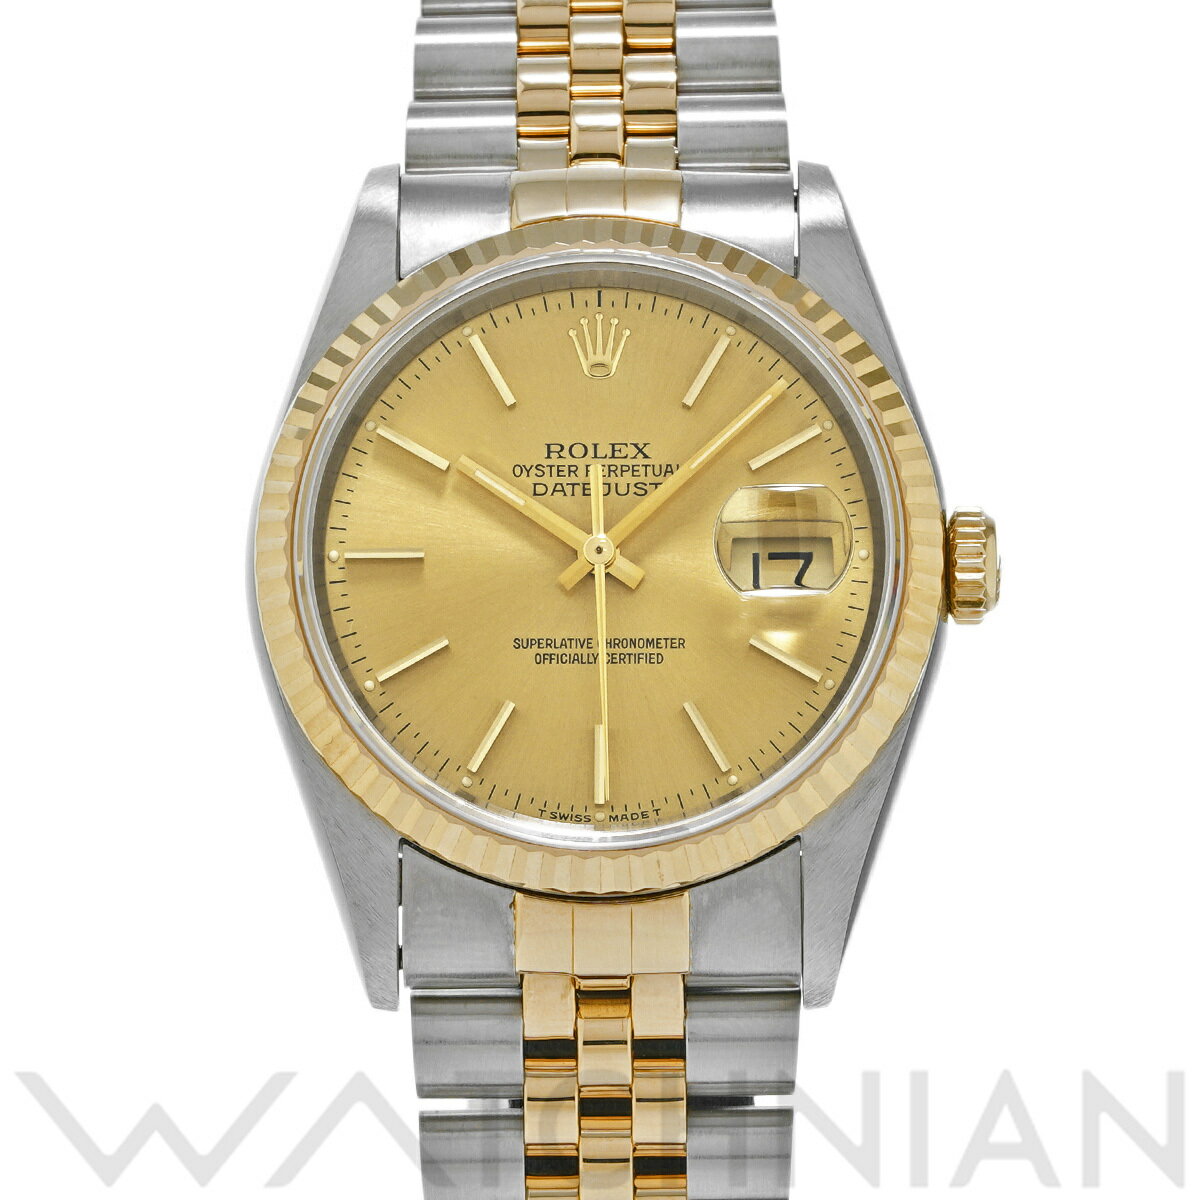 【ローン60回払い無金利】【中古】 ロレックス ROLEX デイトジャスト 16233 S番(1994年頃製造) シャンパン メンズ 腕時計 ロレックス 時計 高級腕時計 ブランド